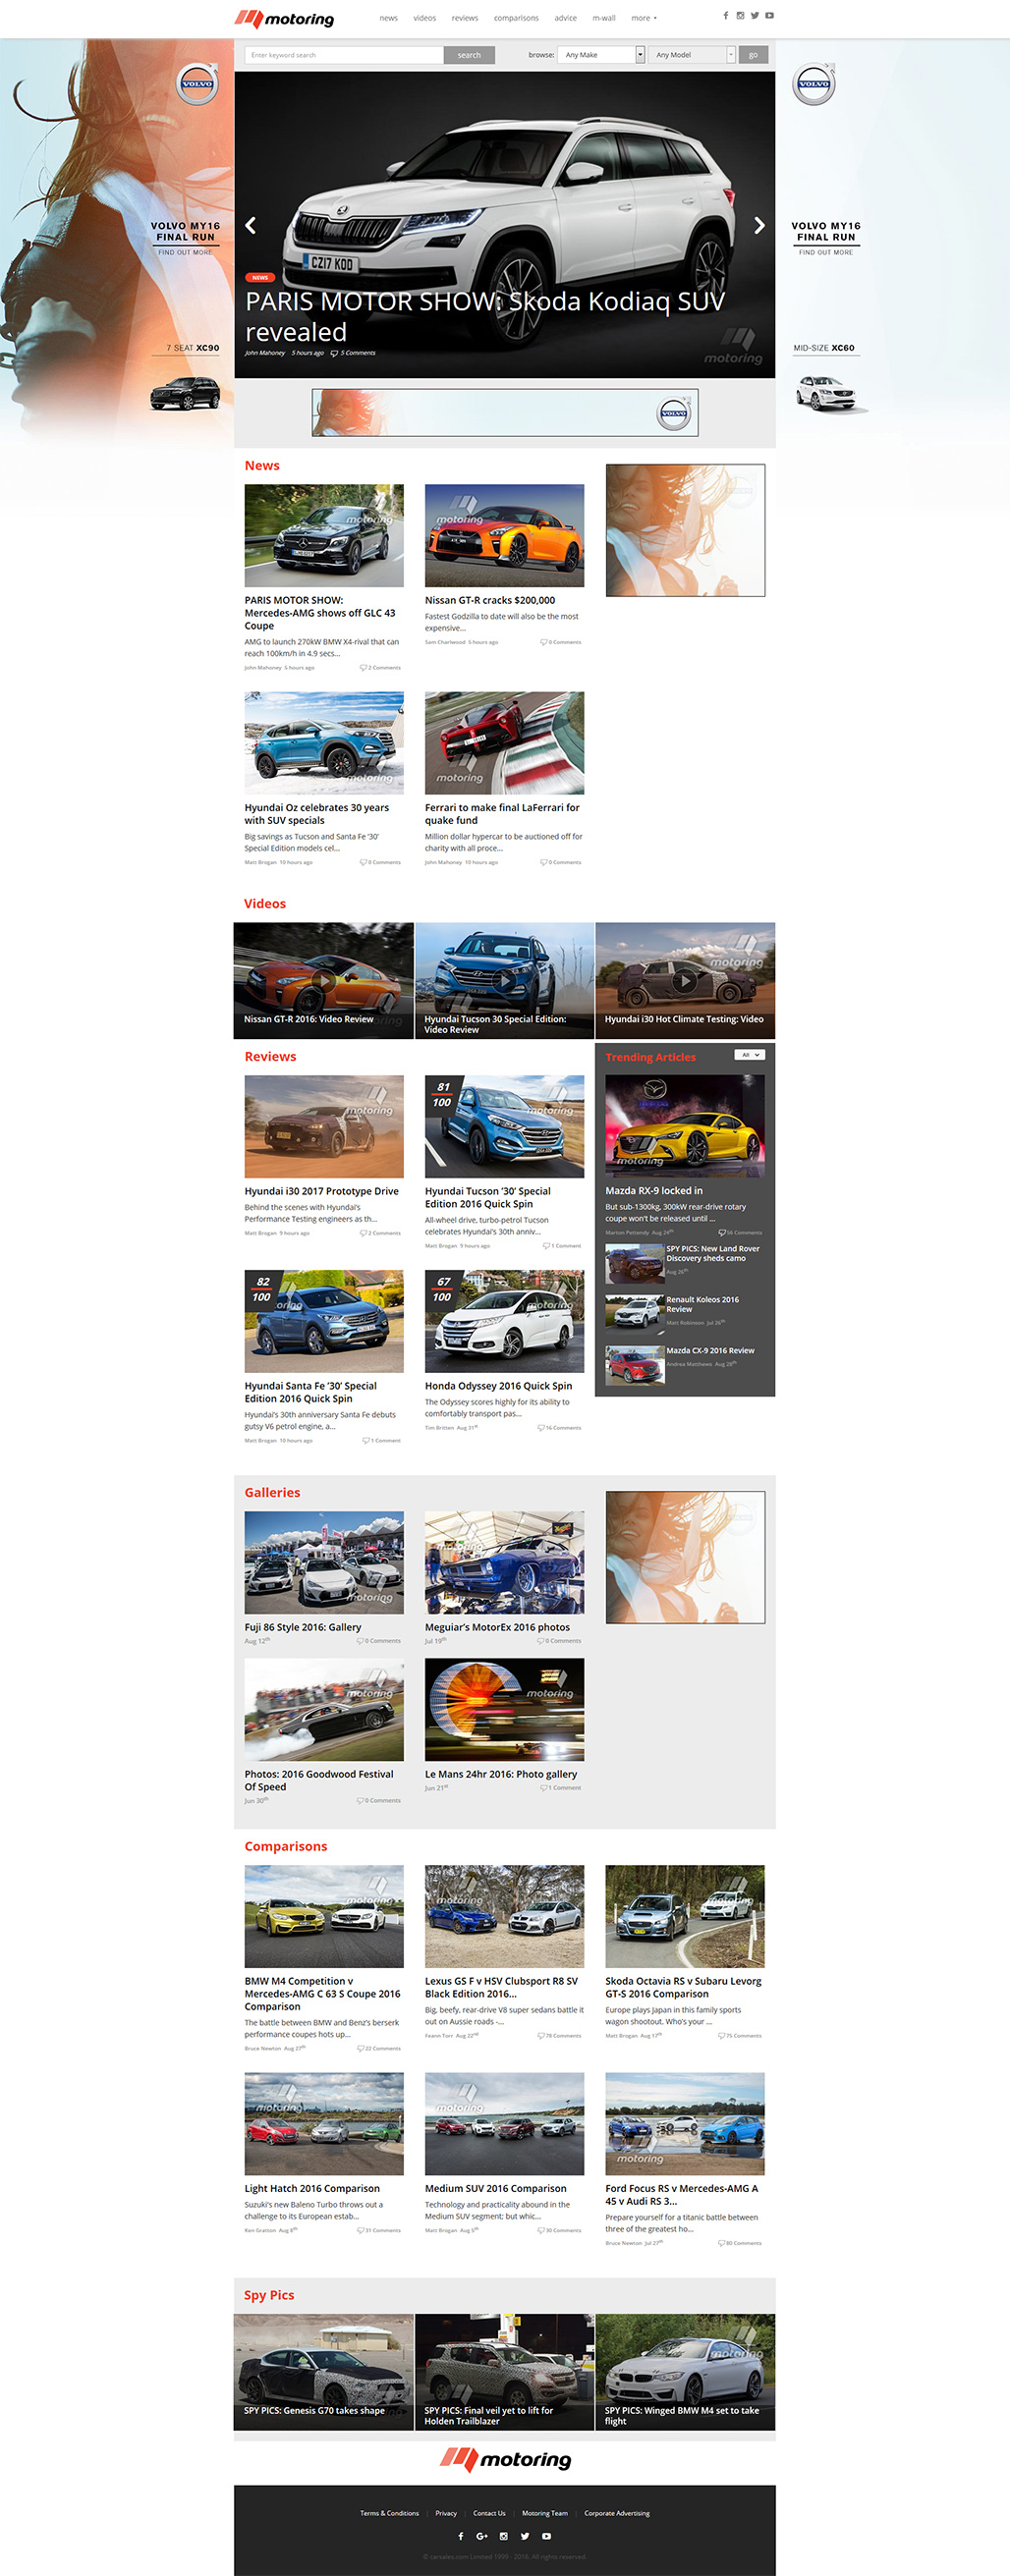 motoring.homepage